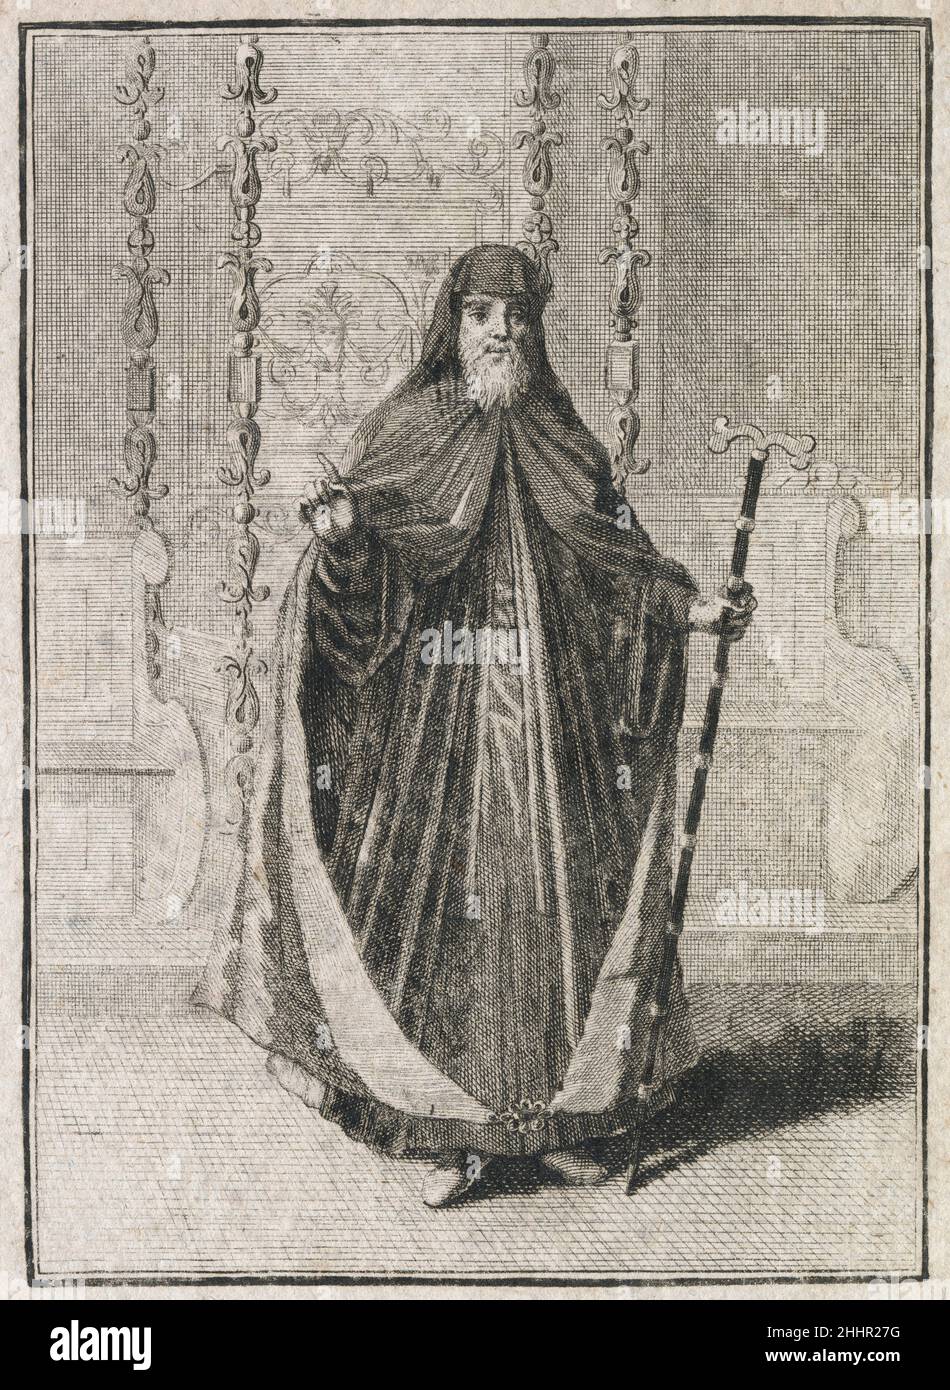 Incisione antica del 17th secolo, 'un Patriarca dei Greci' (Ein Patriarca derer Griechen) di Johann Christoph Weigel, noto come Christoph Weigel il Vecchio (1654-1725). FONTE: INCISIONE ORIGINALE Foto Stock